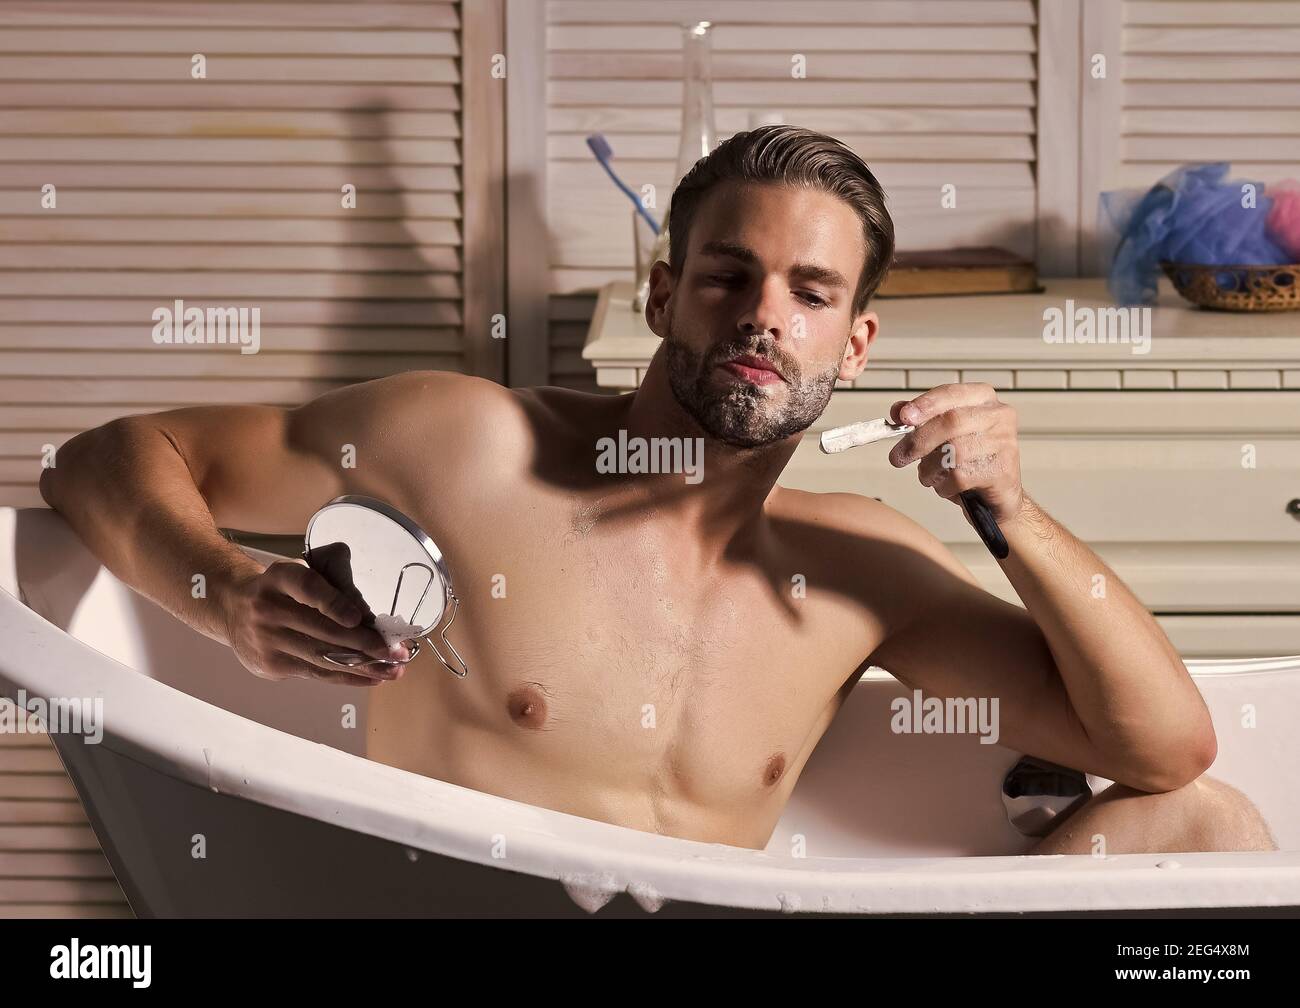 Junge attraktive Mann rasiert im Spiegel, Gay Rasieren im Bademantel im  Badezimmer Stockfotografie - Alamy